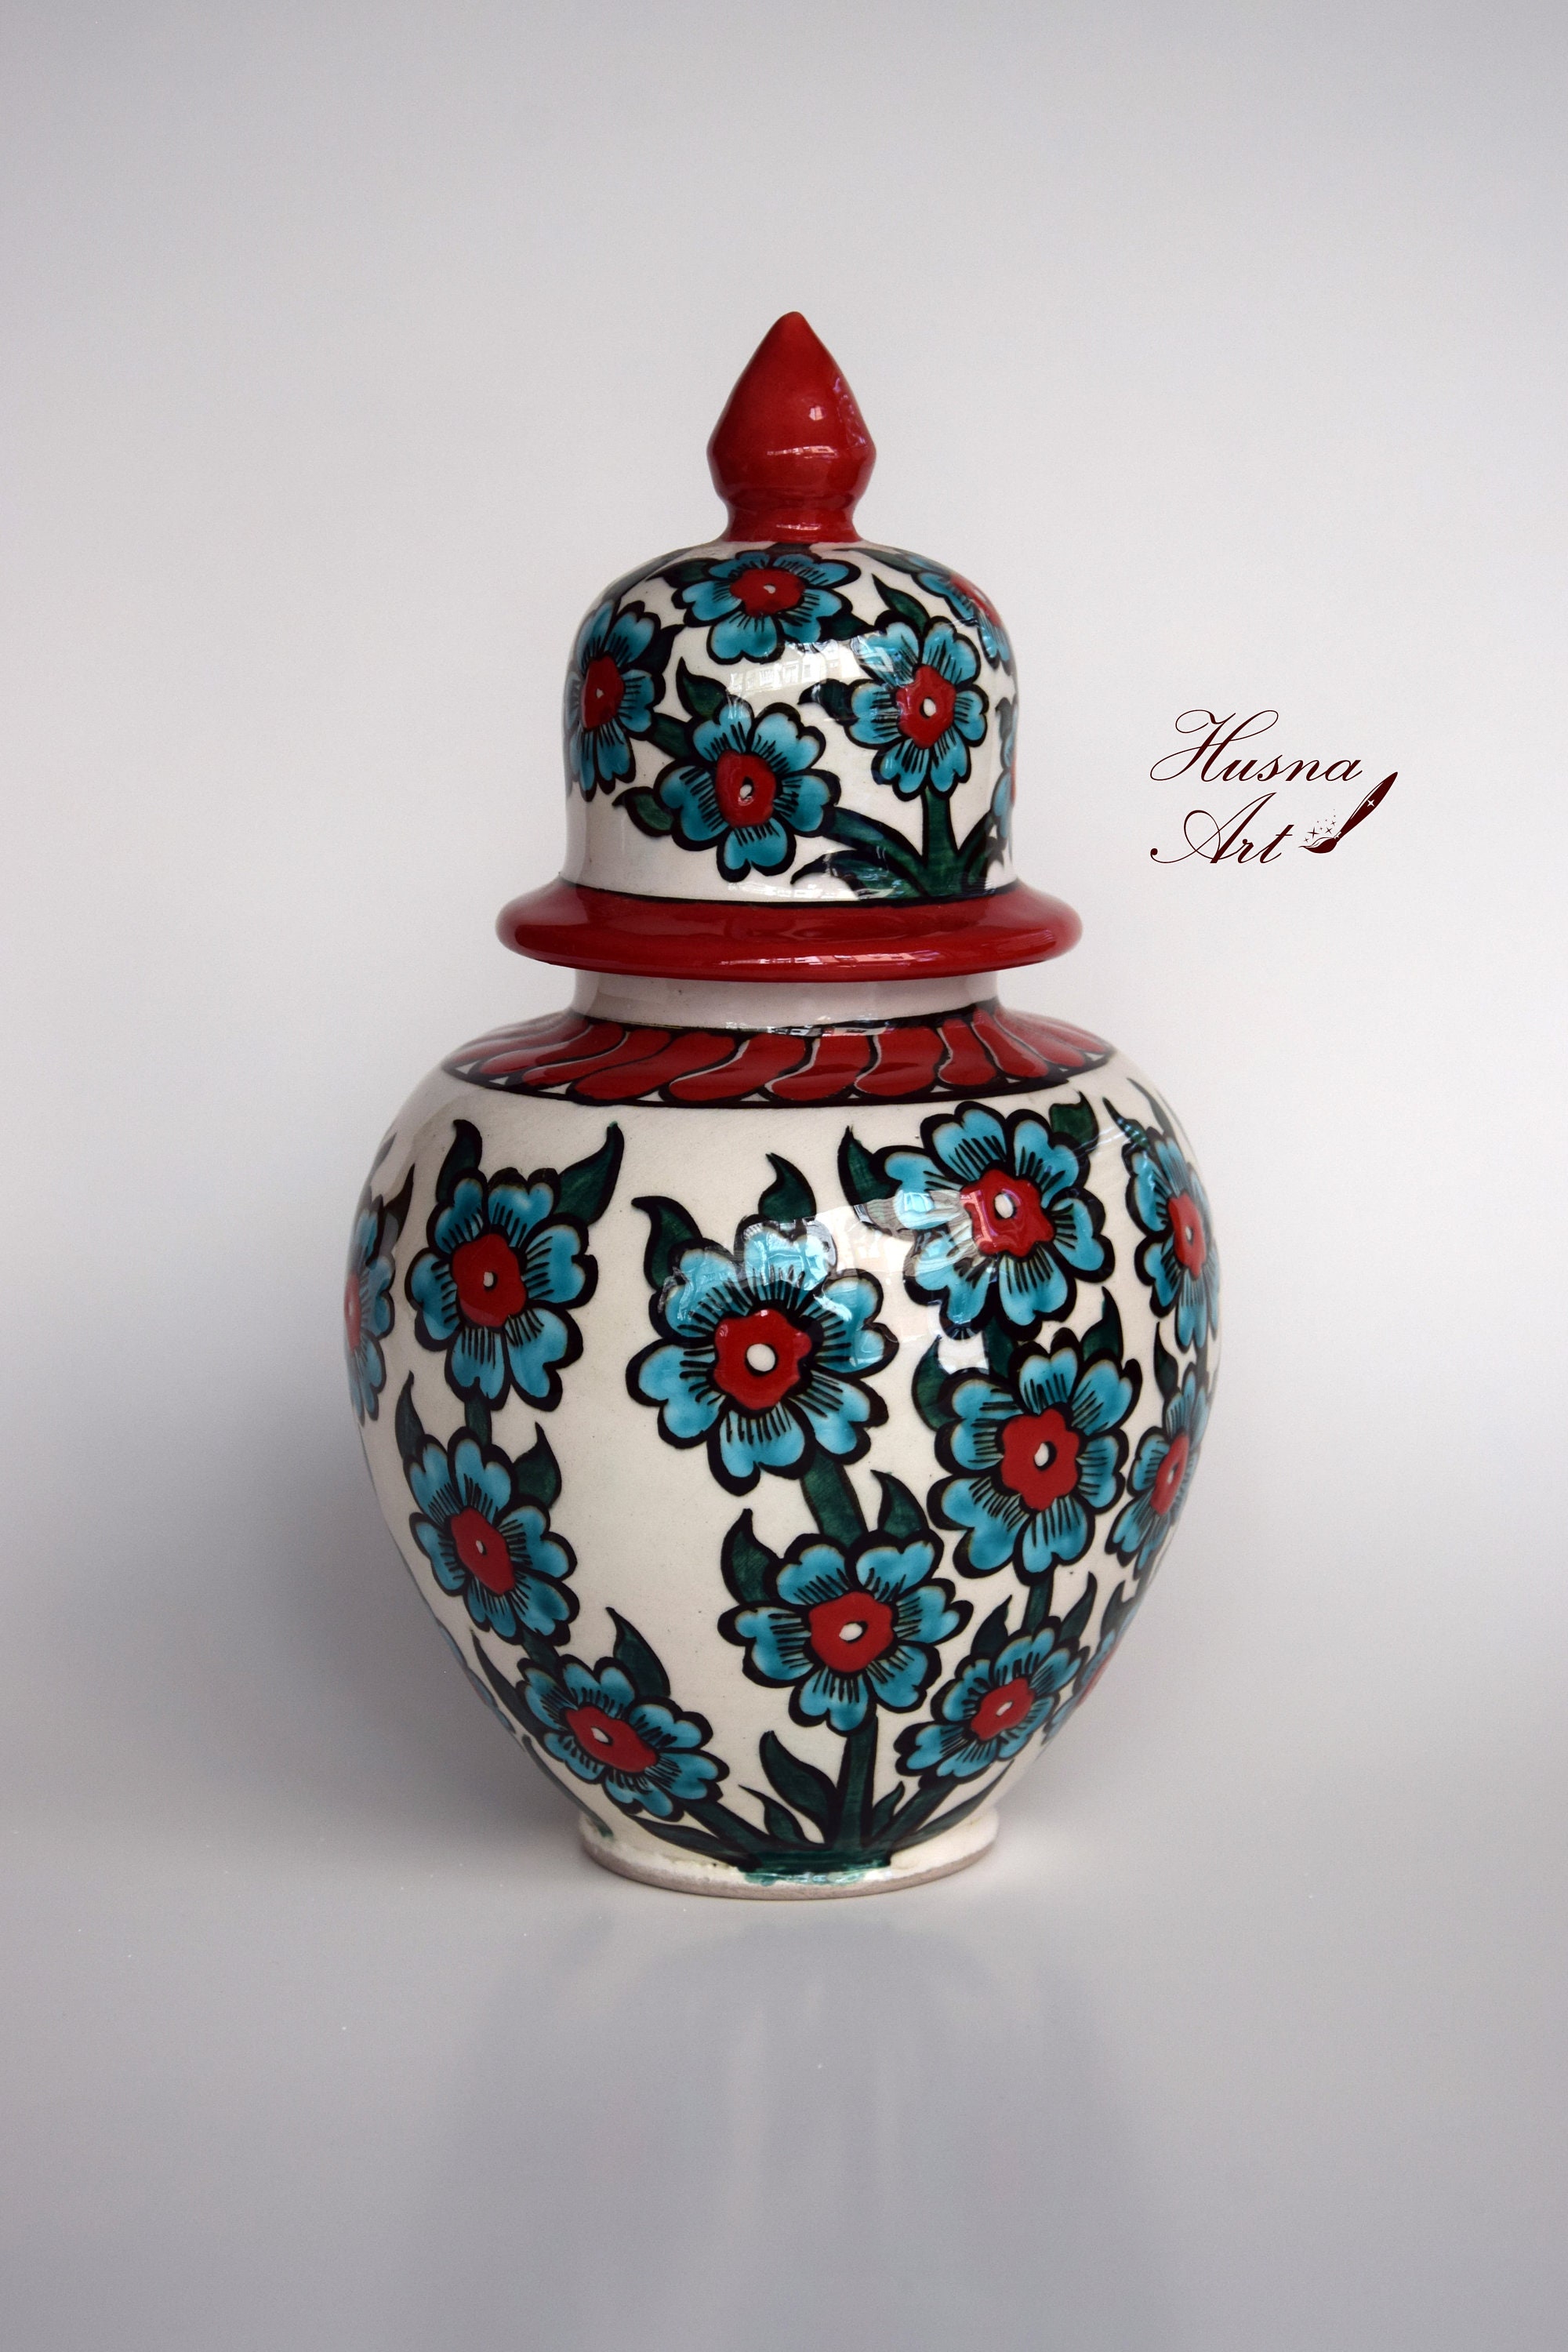 8  Ceramic Vase Ceramic Jar Ceramic Decoration Decorative Jar 20 cm Ceramic Home Decor Handmade Ceramic Vase Handmade Ceramic Vase